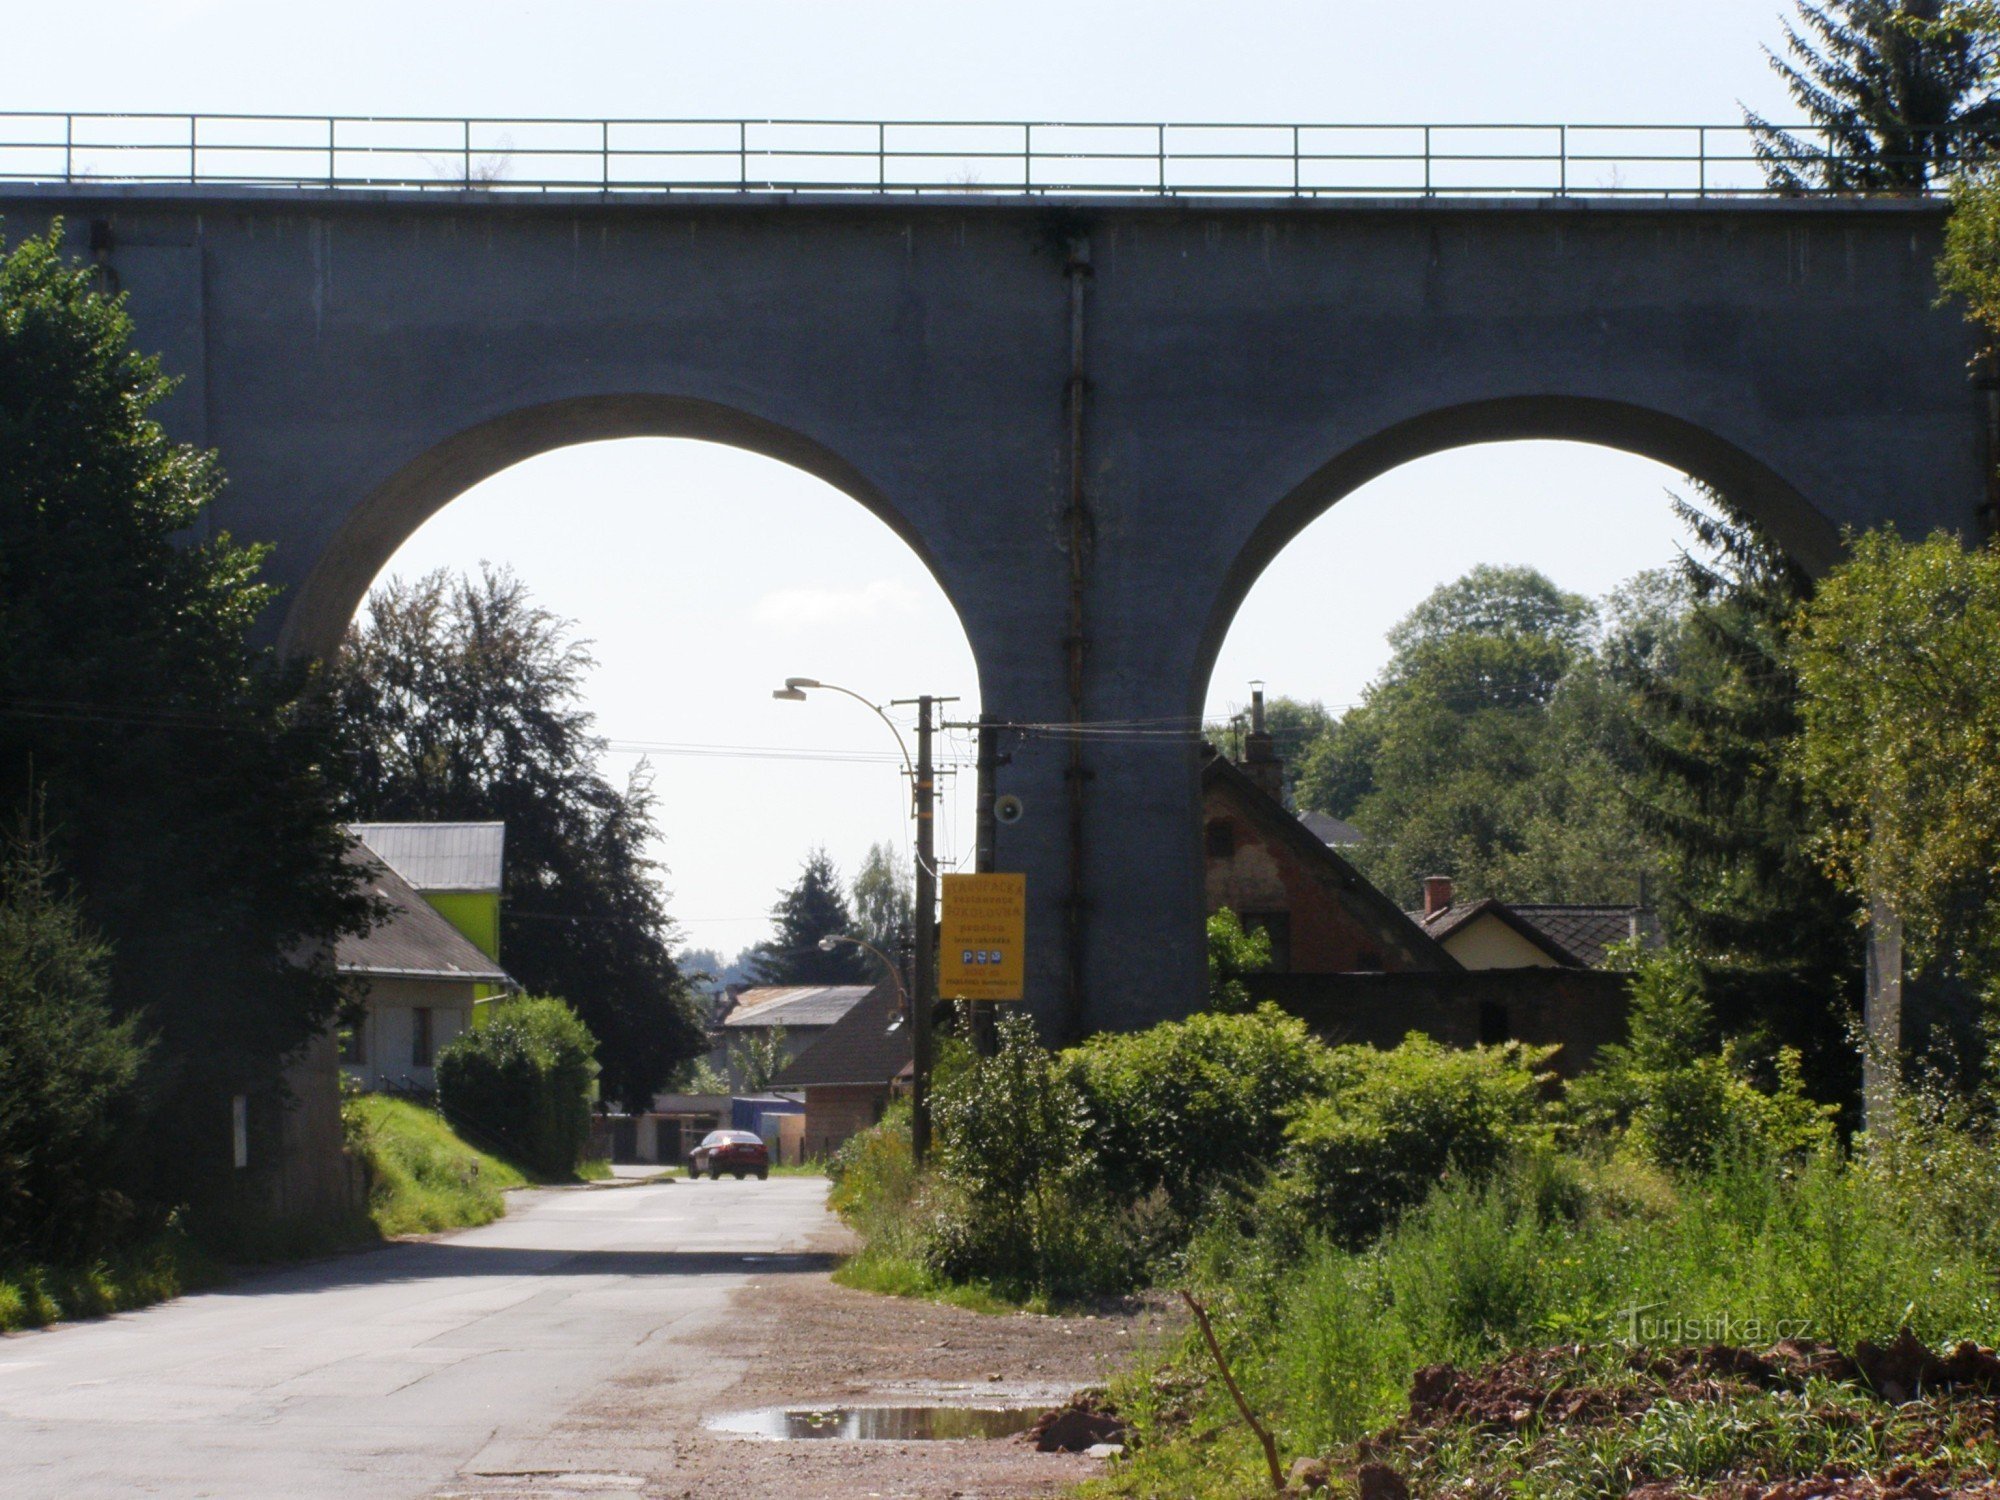 Stará Paka - wiadukt kolejowy